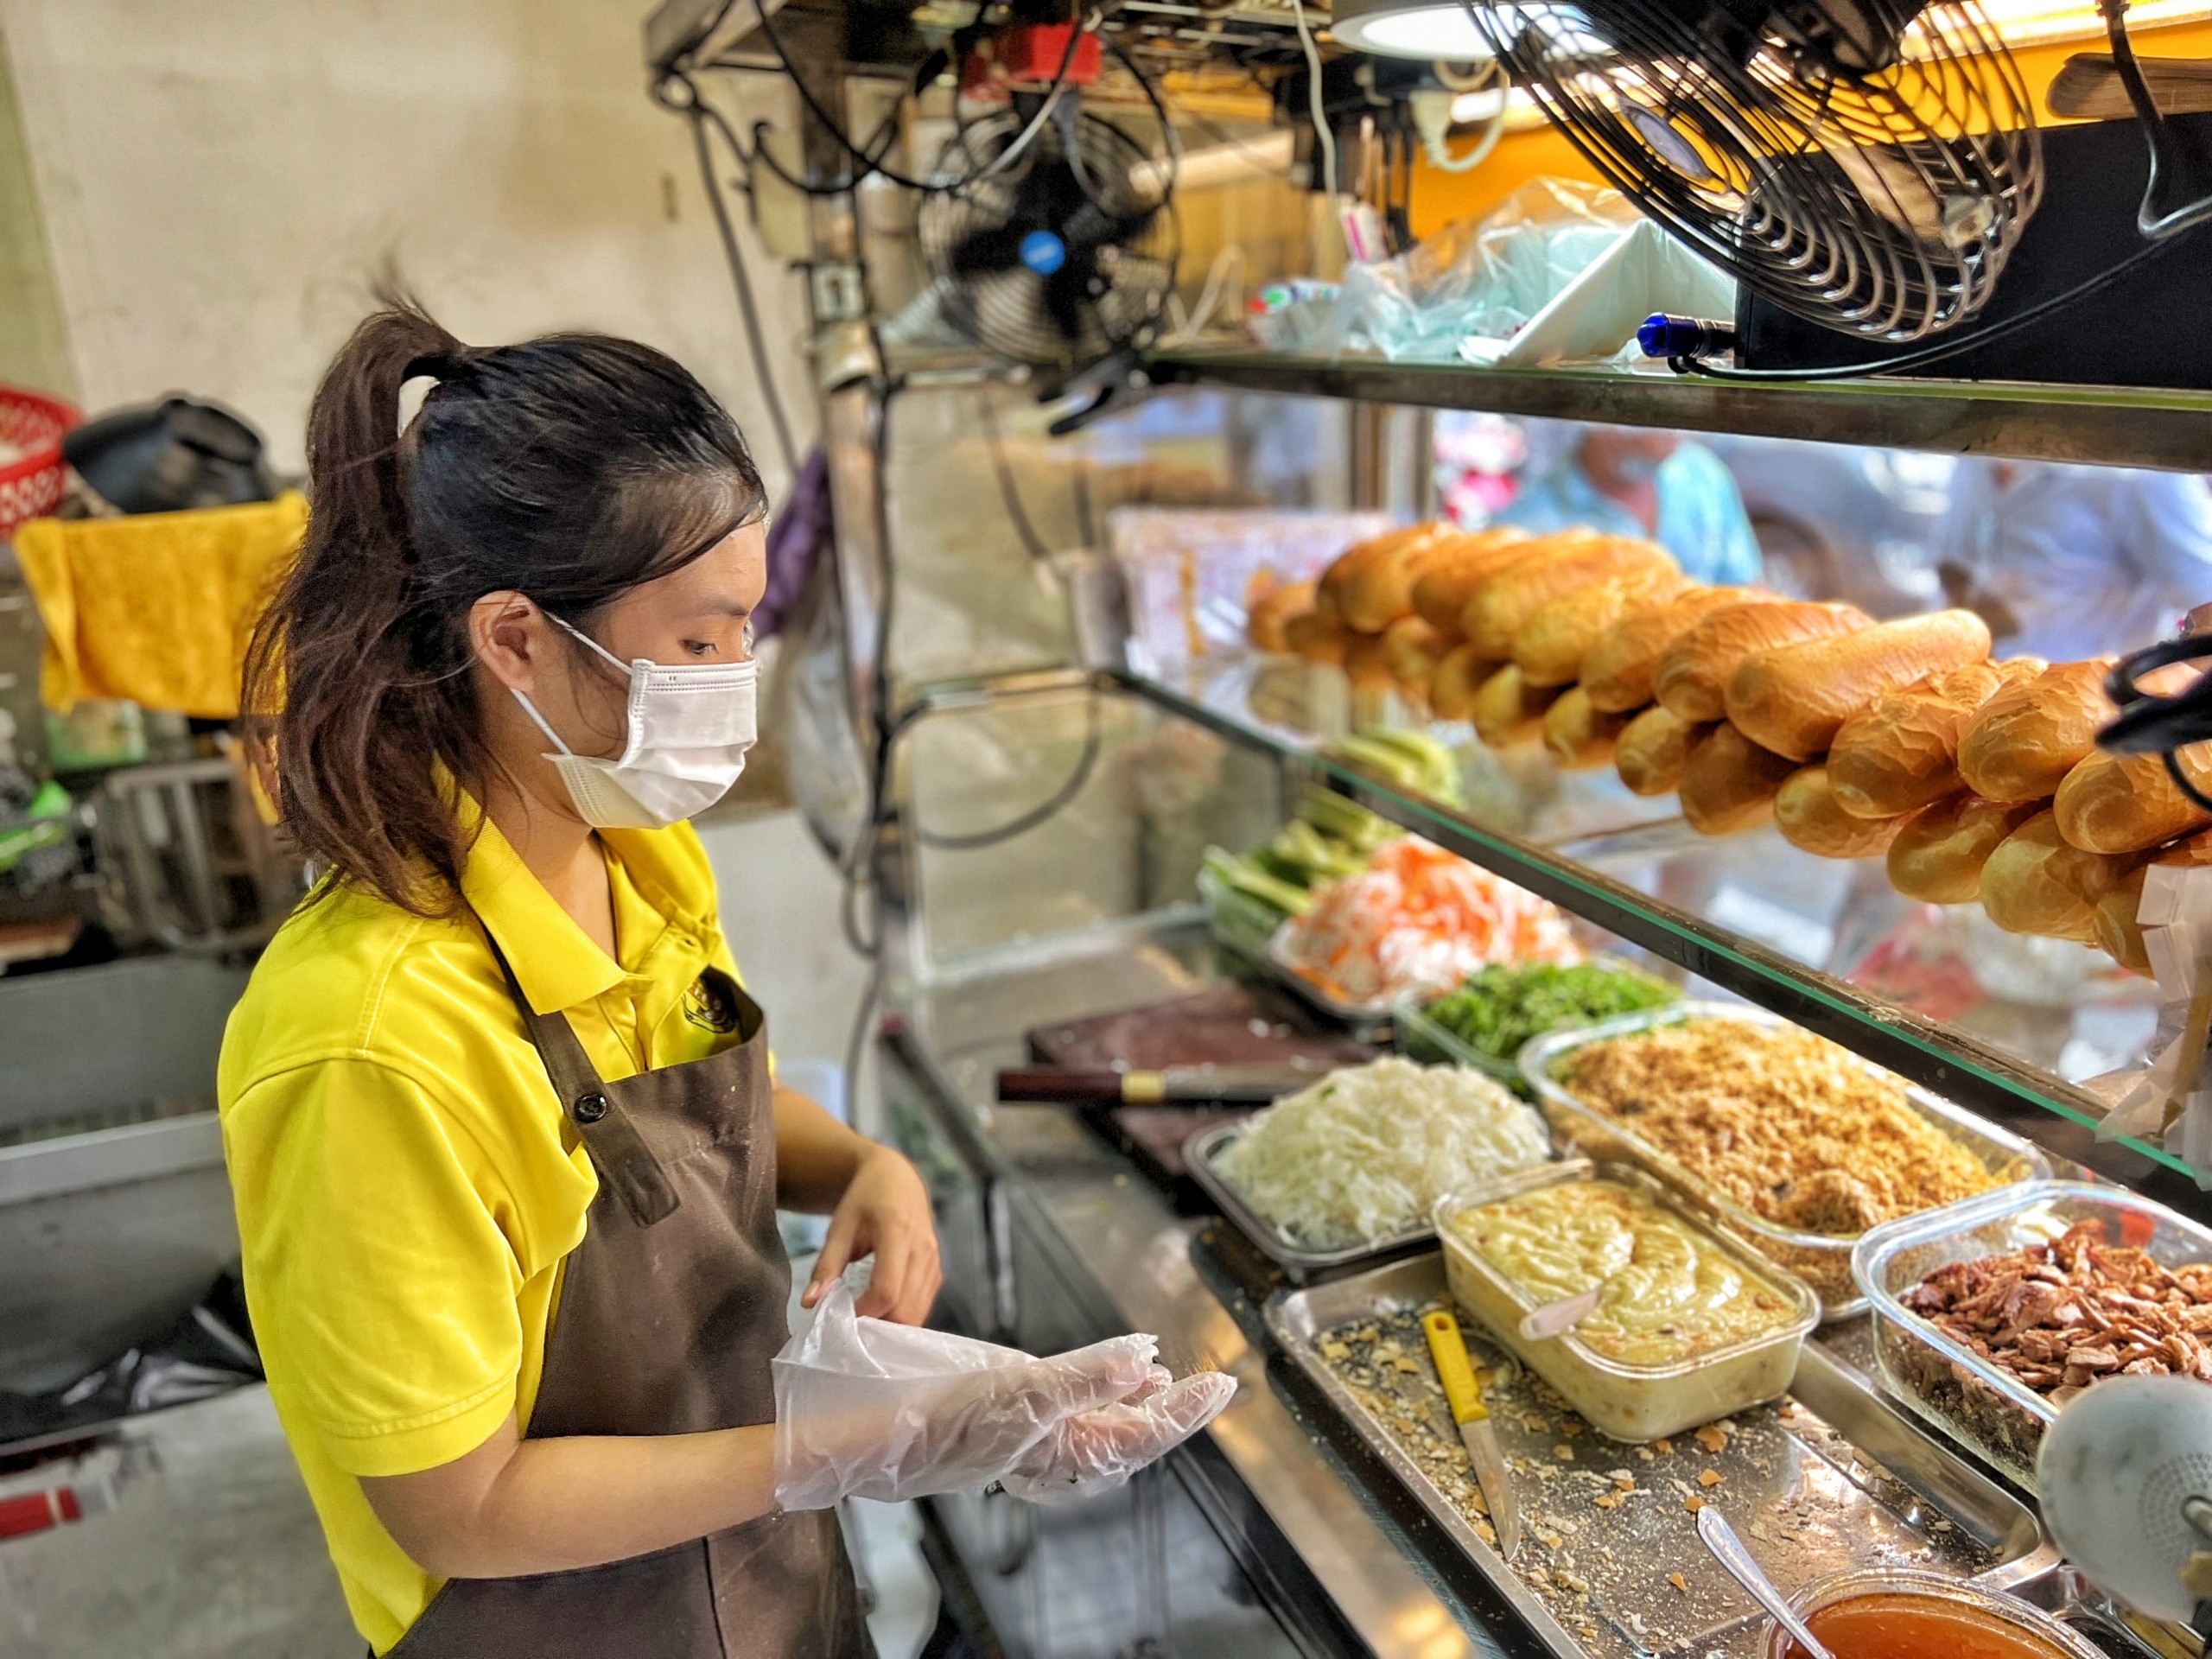 Bánh mì Chim Chạy, một trong những thức ăn đường phố nổi tiếng nhất ở Sài Gòn. Với vỏ bánh giòn tan, nhân bánh thơm ngon và đa dạng về màu sắc, bánh mì Chim Chạy như một cơn lốc ẩm thực đã làm say đắm biết bao vị khách. Hãy xem hình ảnh để nhận thấy sức hấp dẫn của món ăn này!